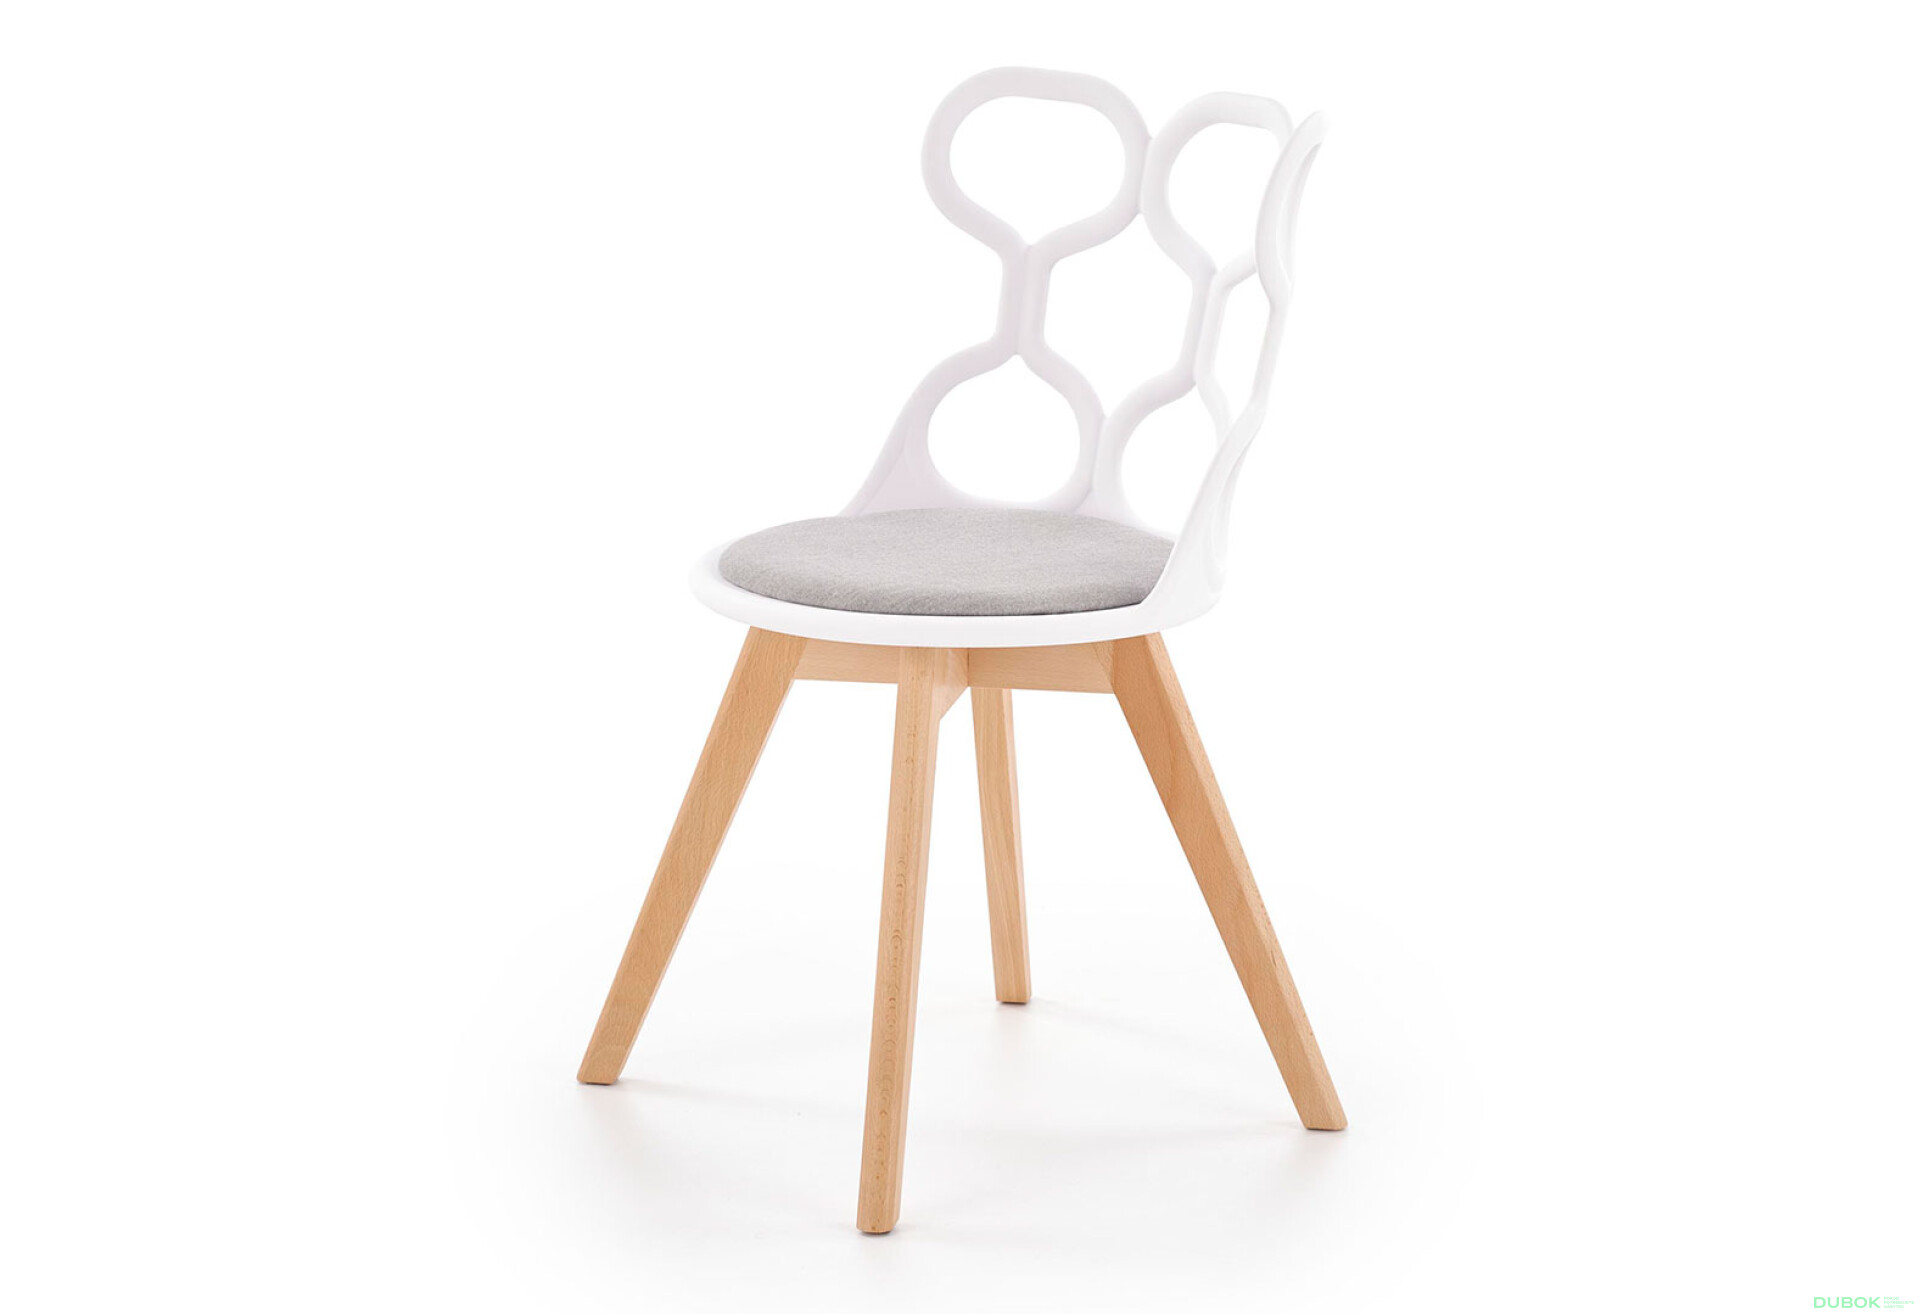 Фото 1 - Židle K308 dřevo / bílý polipropylen, tkanina popel